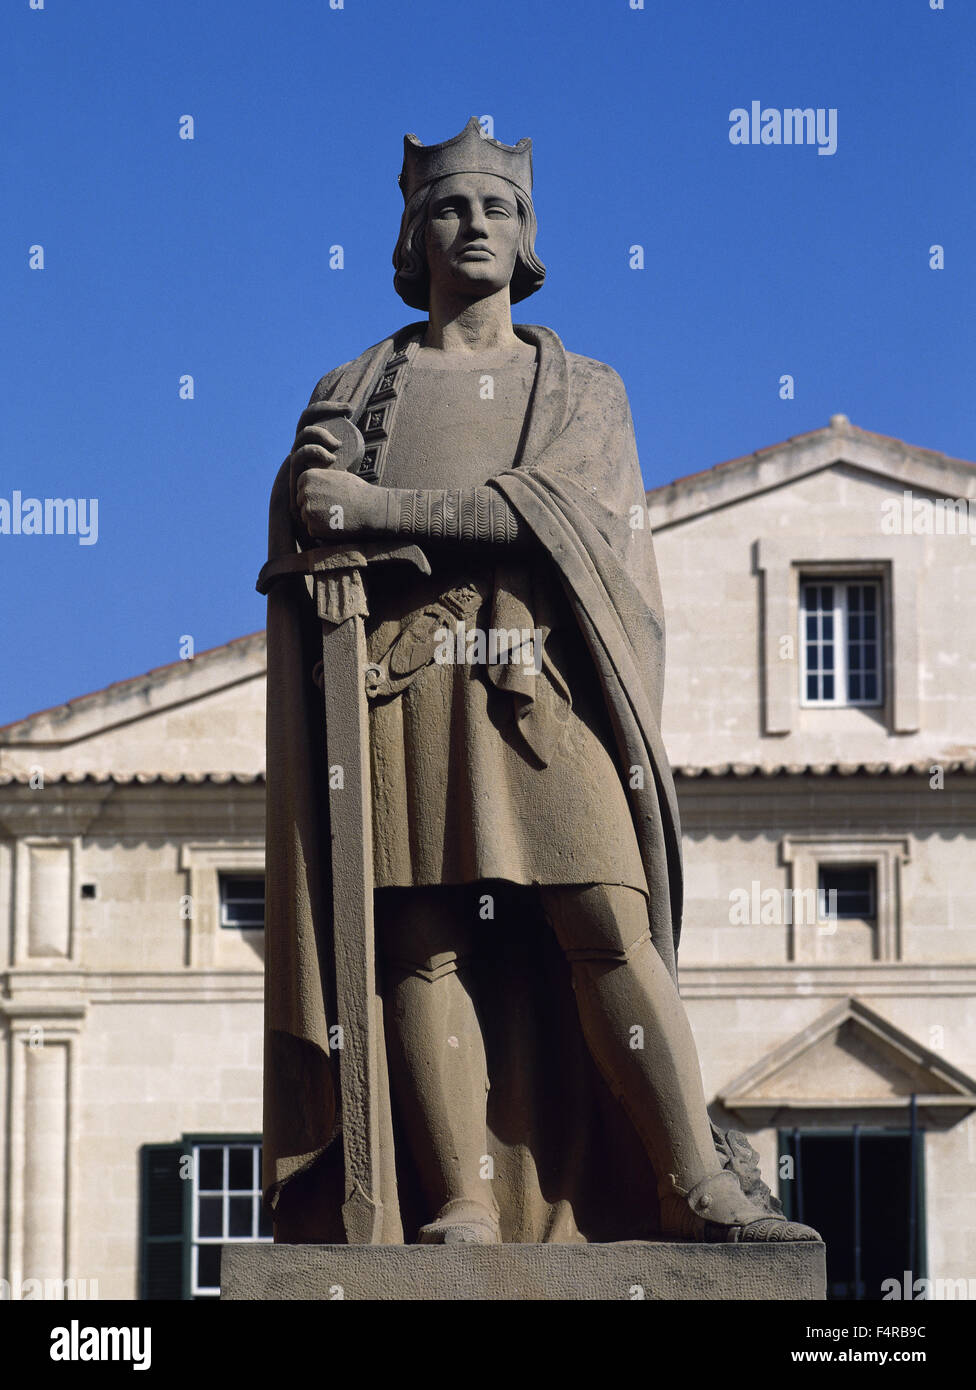 Il re Alfonso III d'Aragona (1265-1291) chiamato il liberale. Un monumento nella conquista piazza (Plaza de la conquista). Mao. Minorca. Isole Baleari. Spagna. Foto Stock